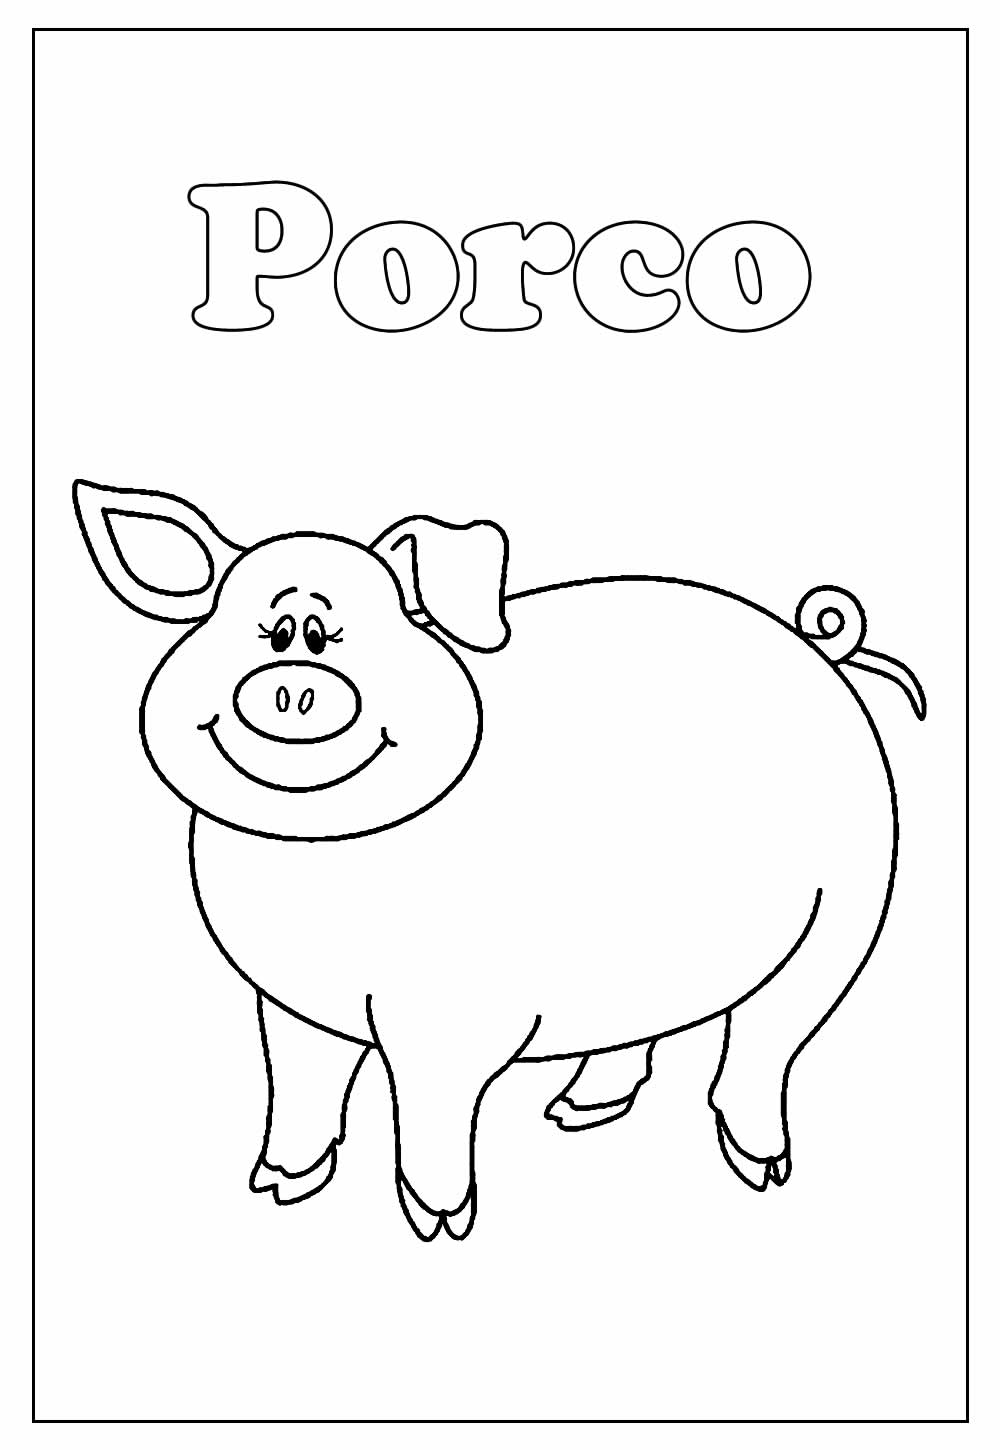 Desenho Educativo de Porquinho para colorir